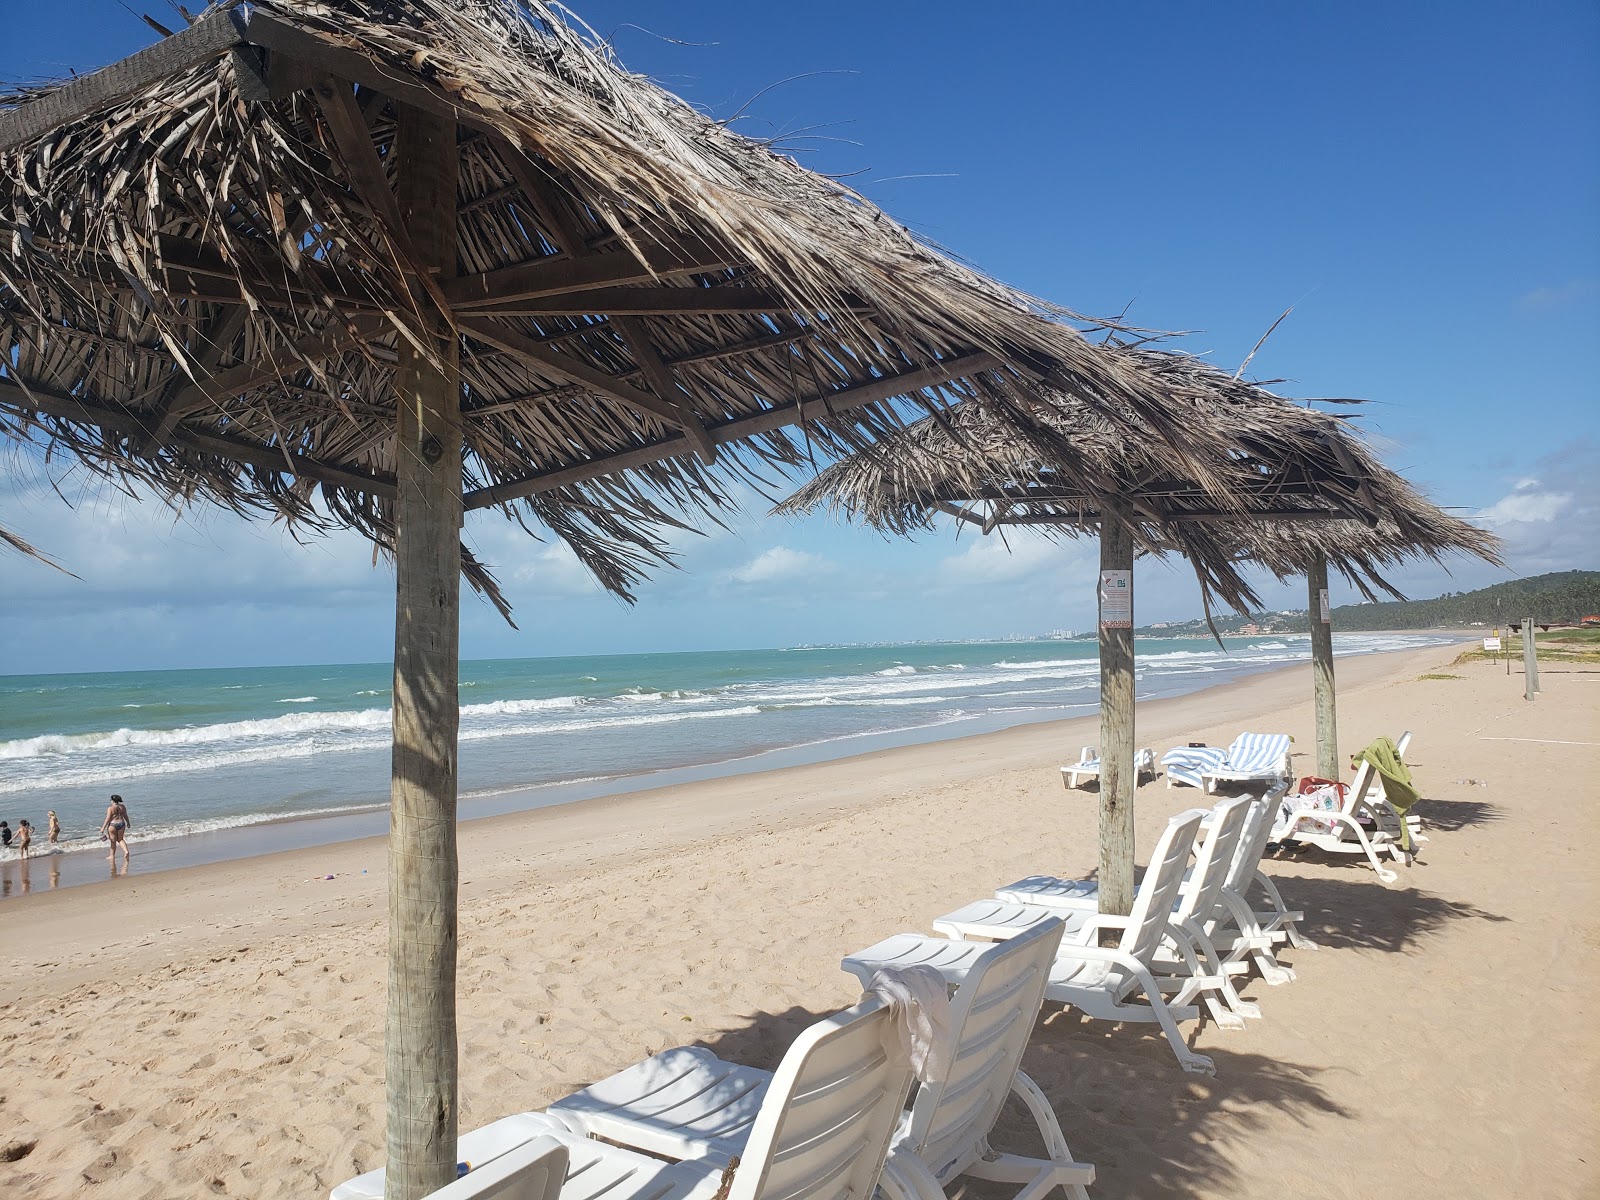 Fotografie cu Praia dos Casais - locul popular printre cunoscătorii de relaxare